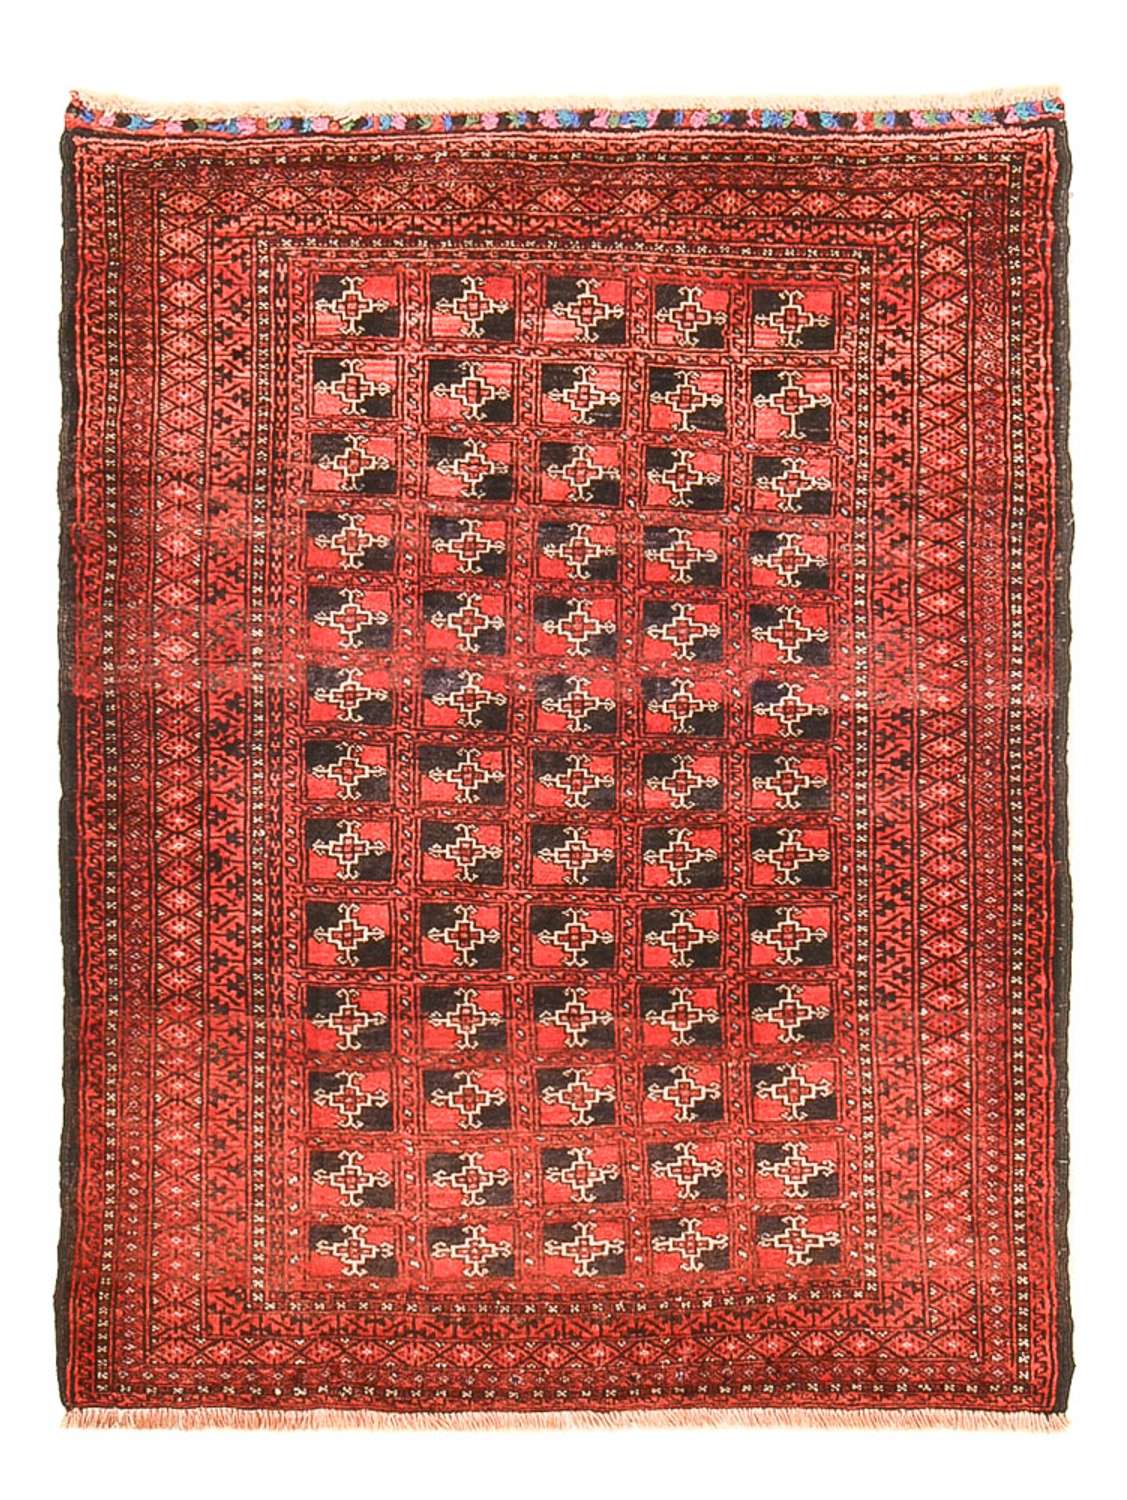 Dywan beludżycki - 124 x 95 cm - czerwony